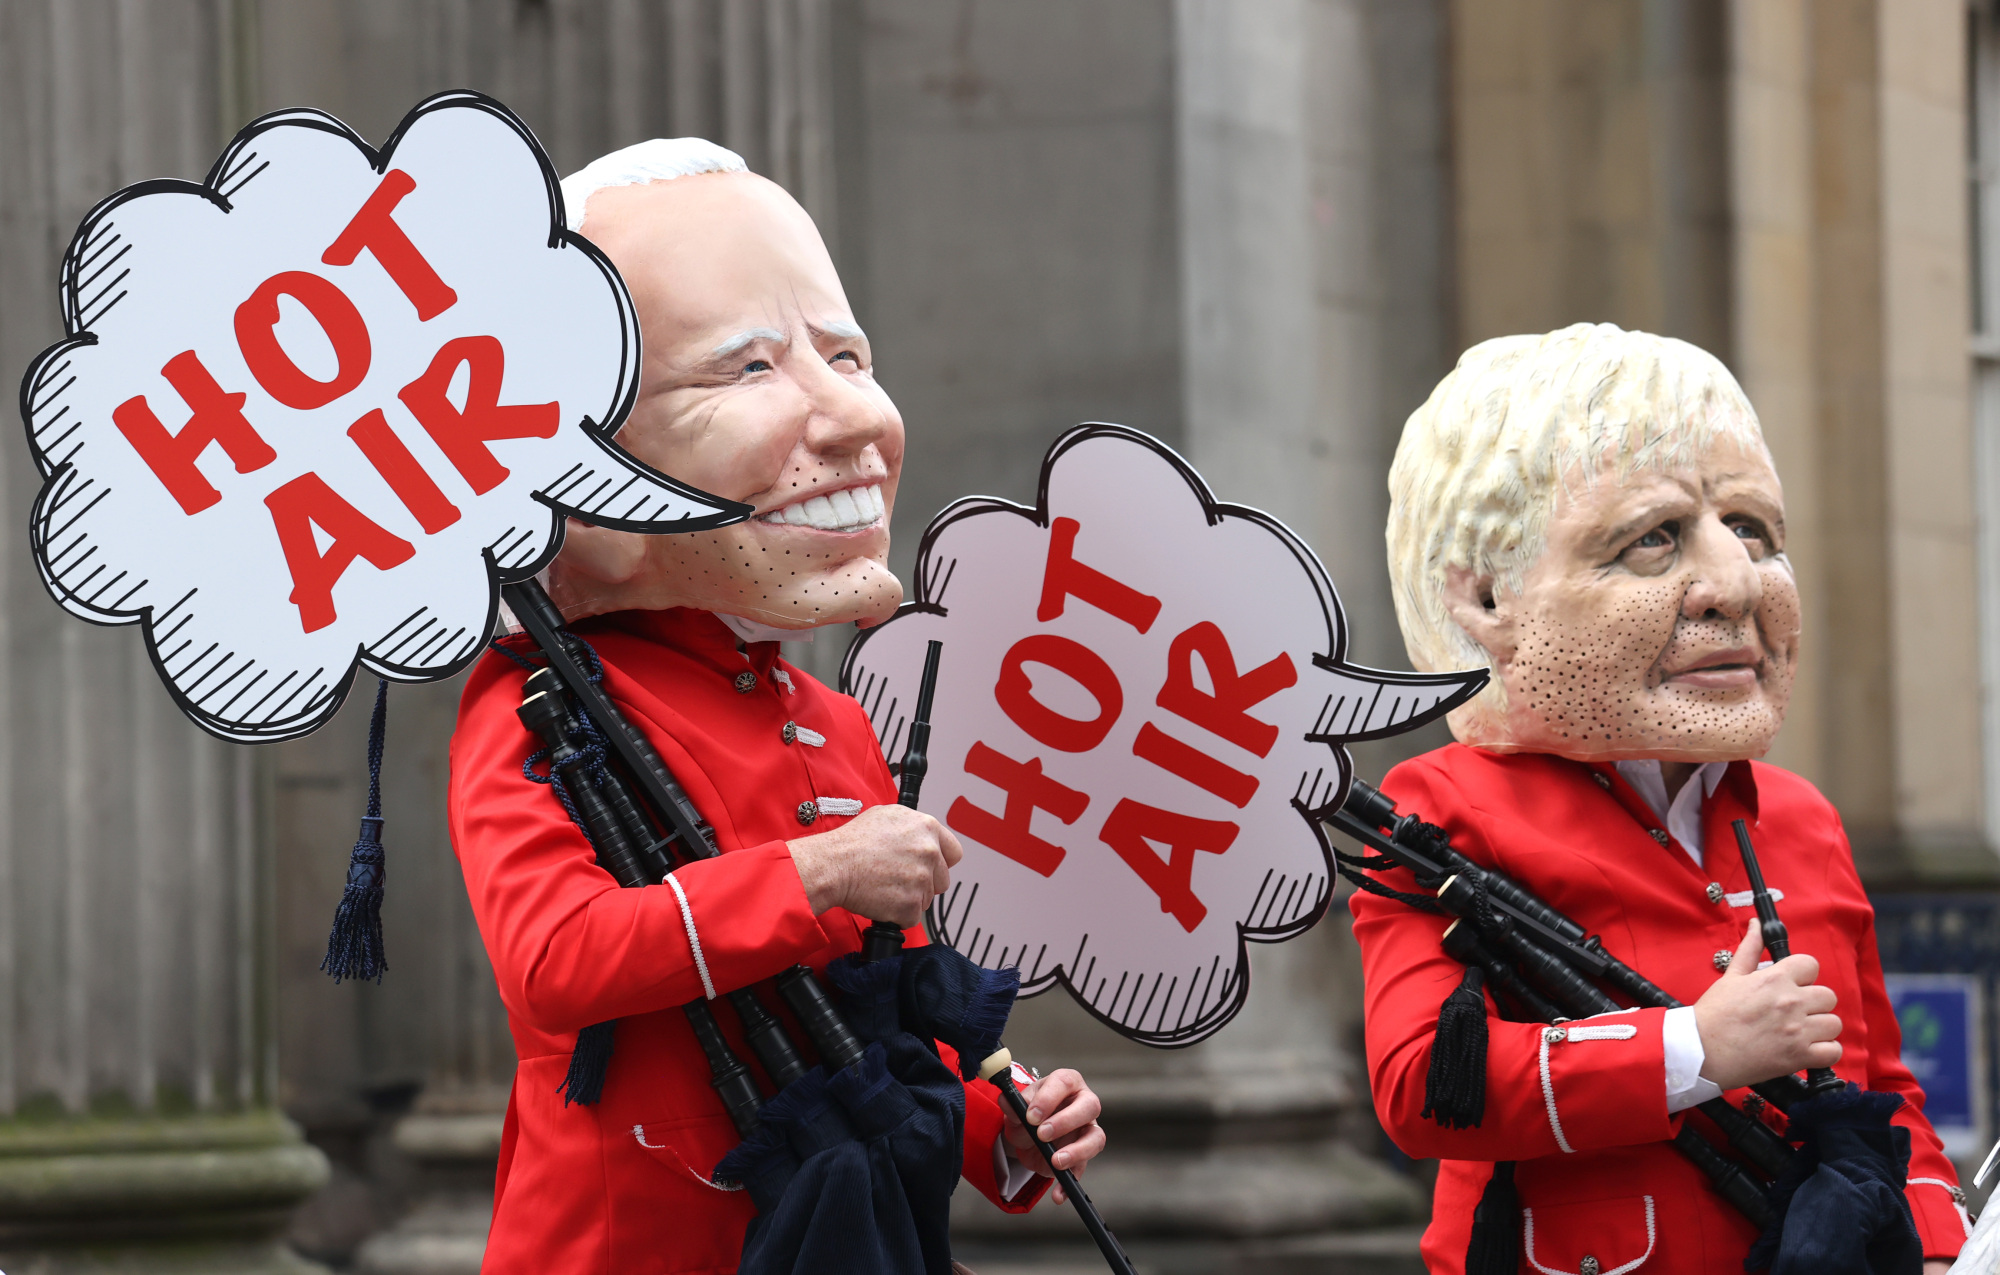 Los manifestantes de Oxfam se disfrazan del presidente estadounidense Joe Biden y del primer ministro británico Boris Johnson "soplando aire caliente" fuera de la Galería de Arte Moderno de Glasgow.